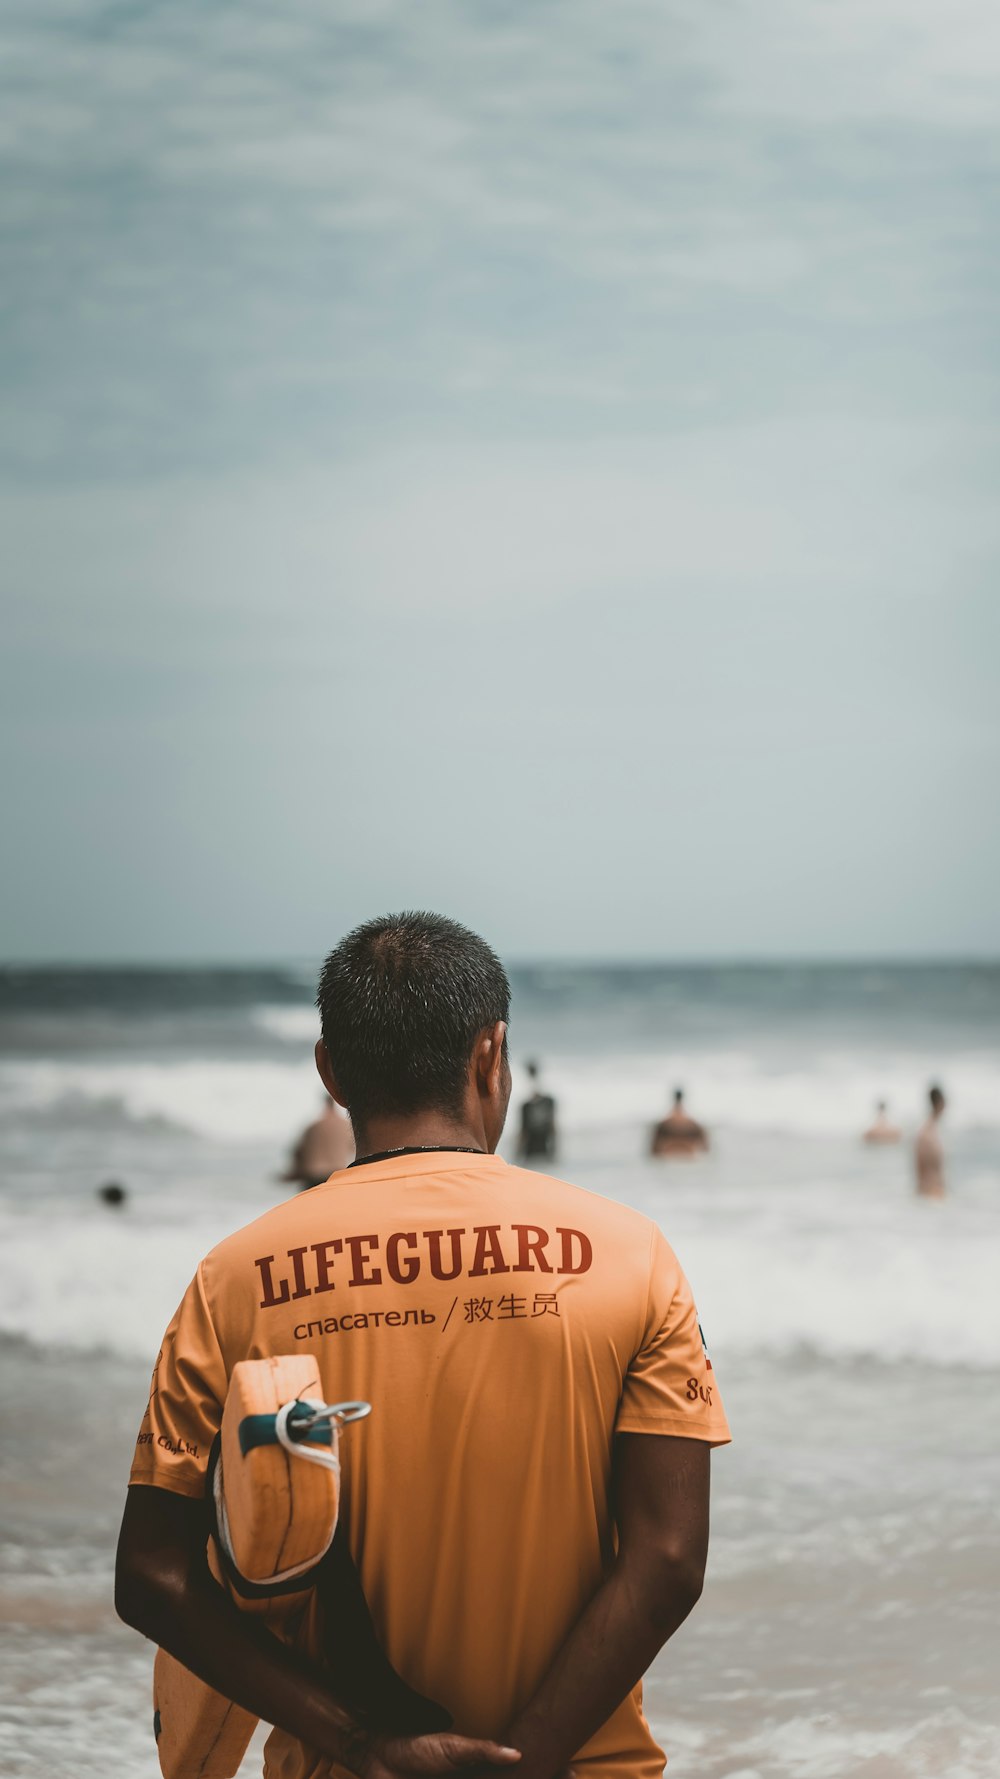 a man in an orange lifeguard shirt standing on the beach